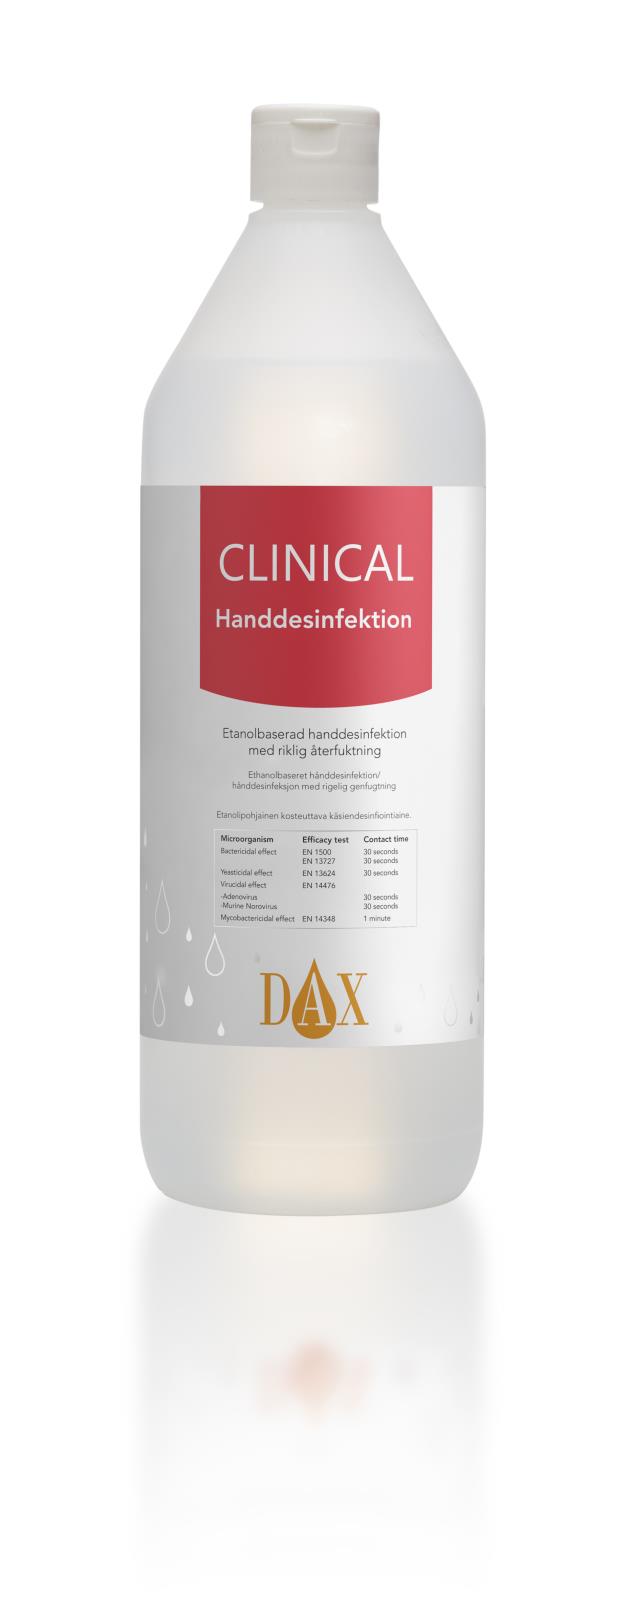 Handdesinfektion DAX Clinical 75% 1L 51010125